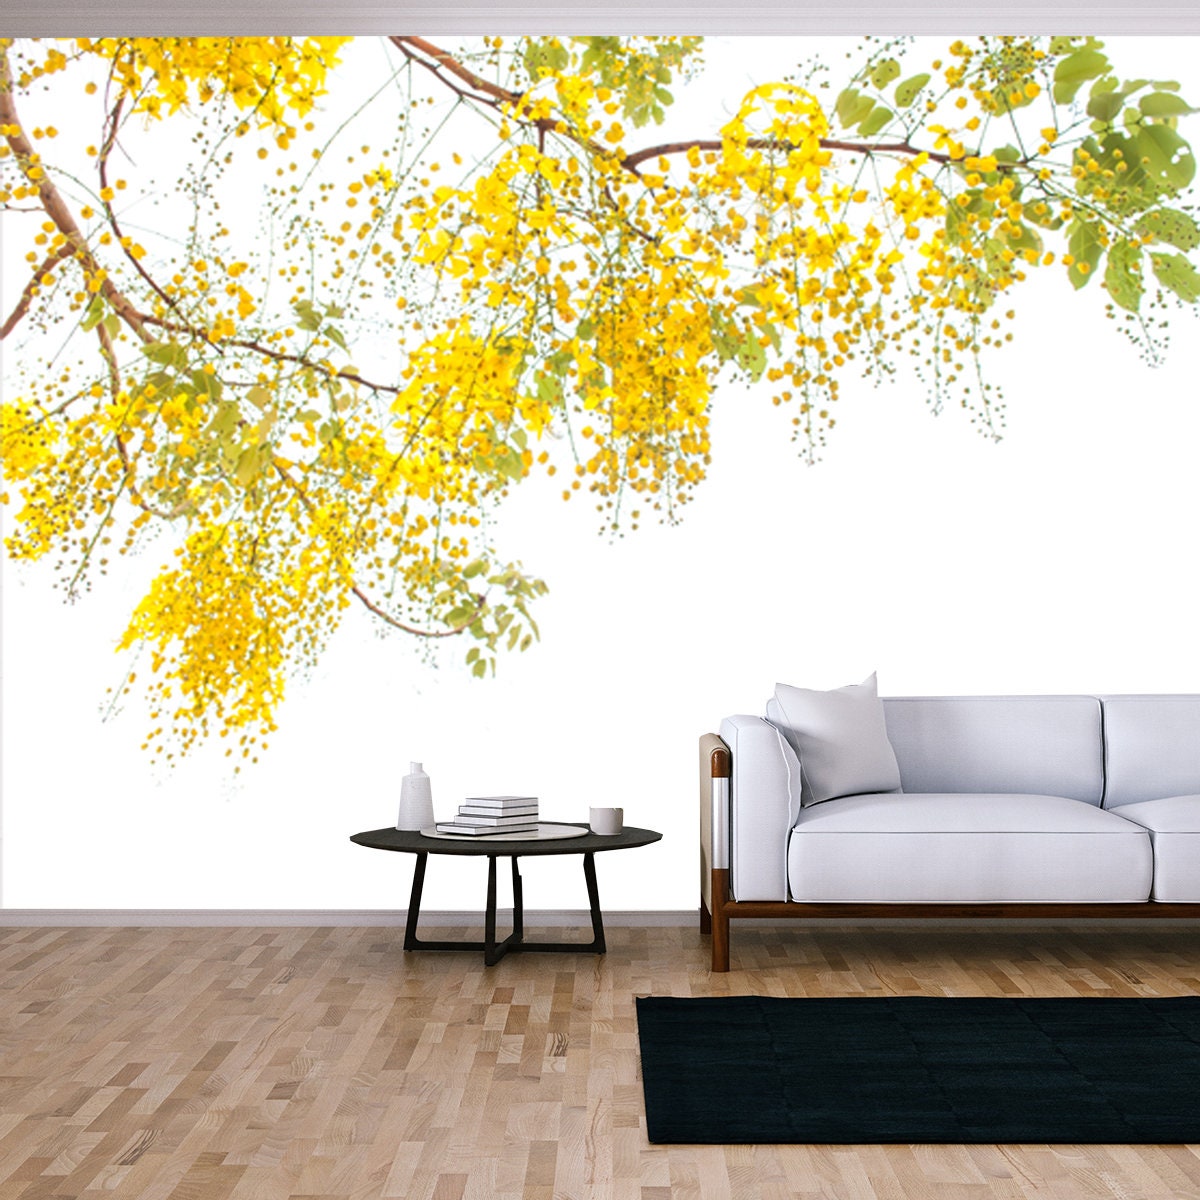 Flower of Golden Shower Tree Isolated on White Background Wallpaper Living Room Mural